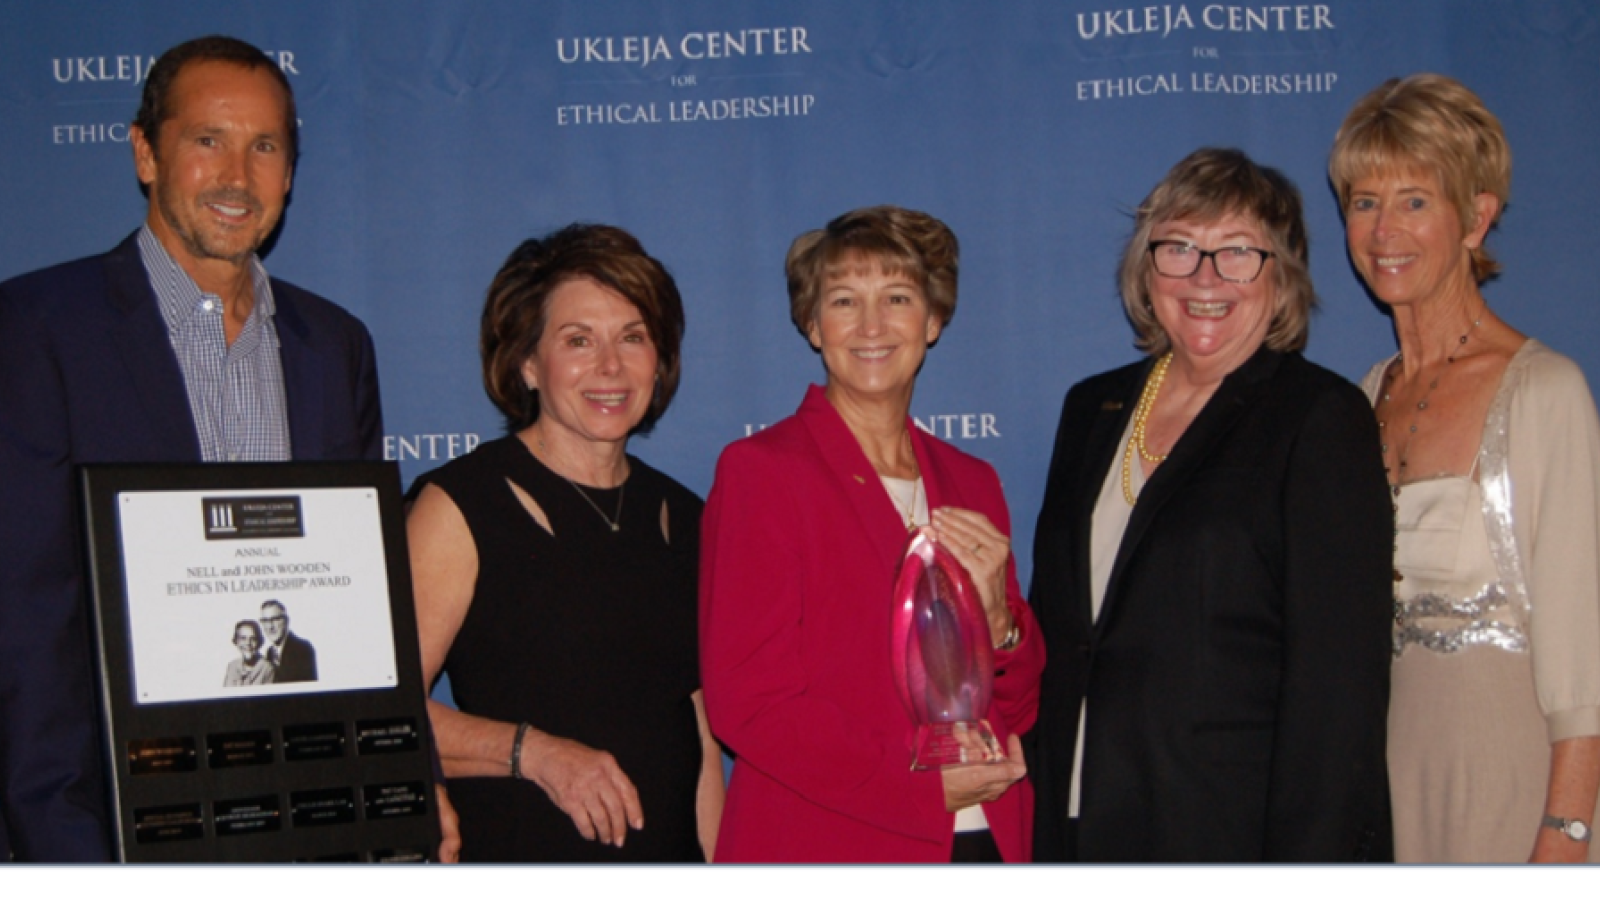 Ukleja Center for Ethical Leadership’s Nell and John Wooden Ethics in Leadership Award Celebration